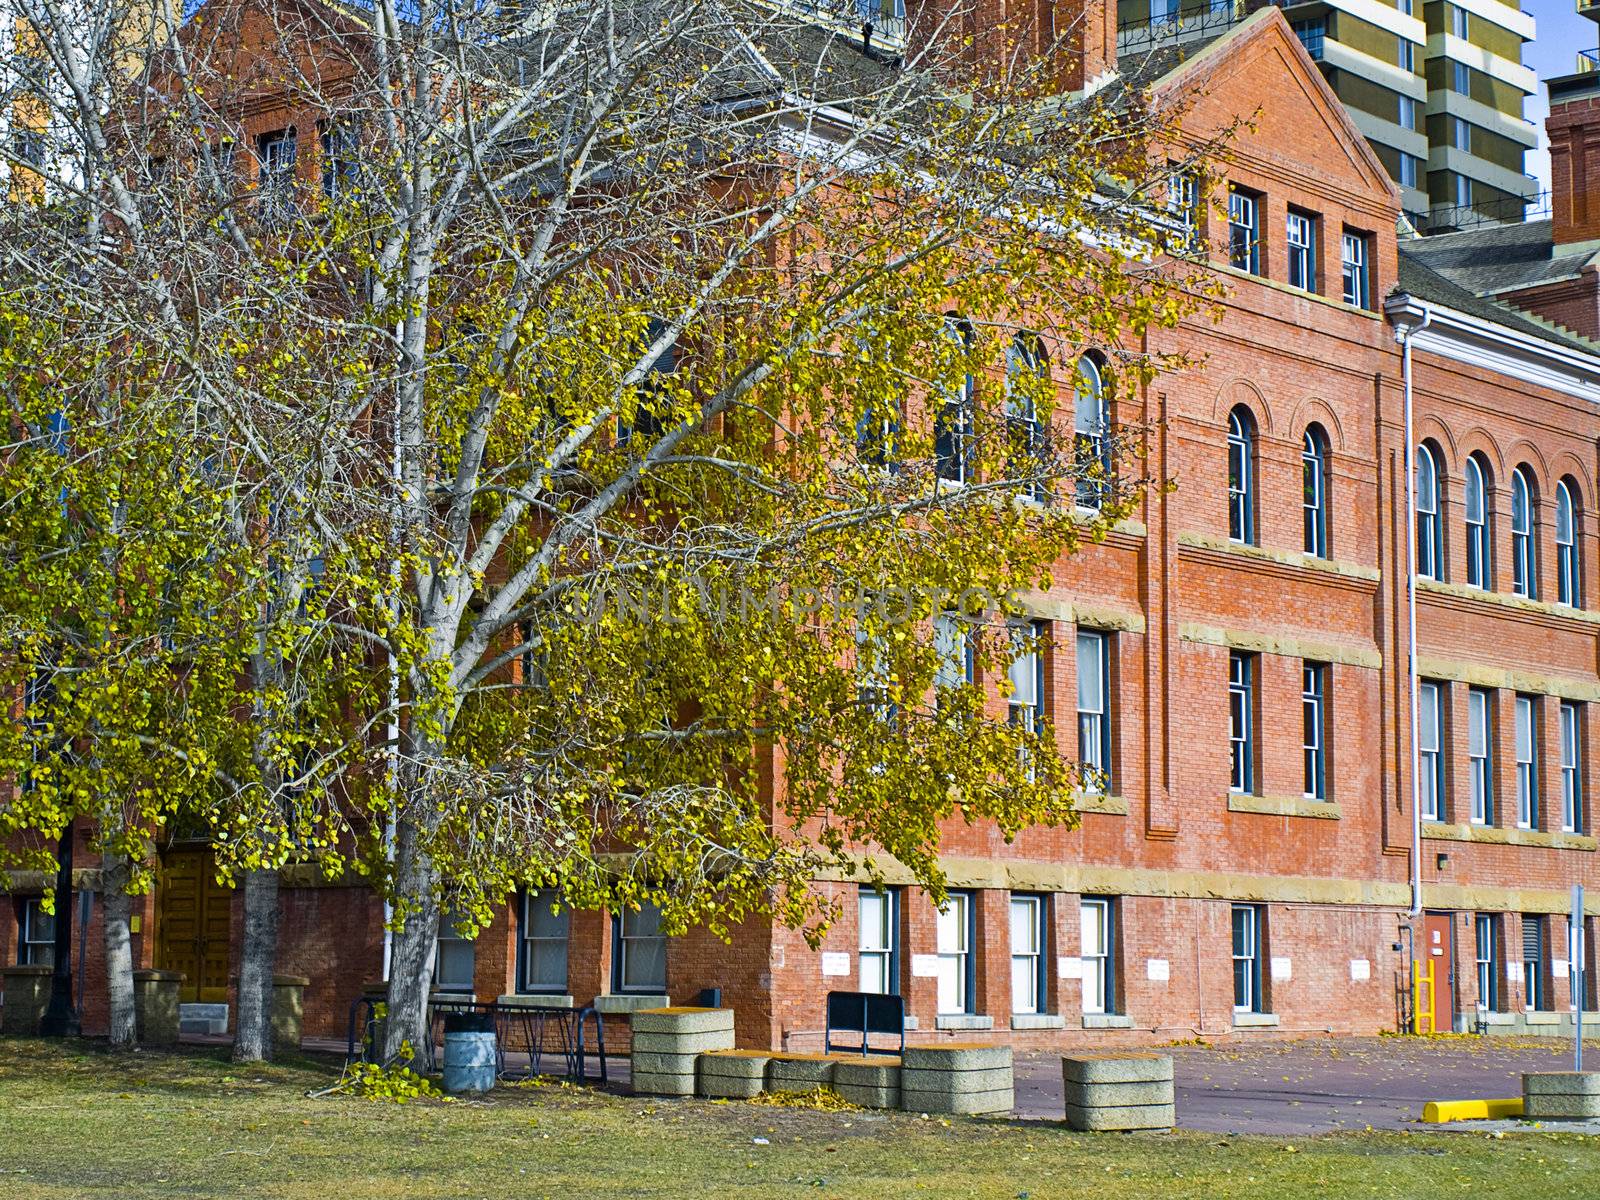 A historic school in Edmonton, Alberta, Canada.